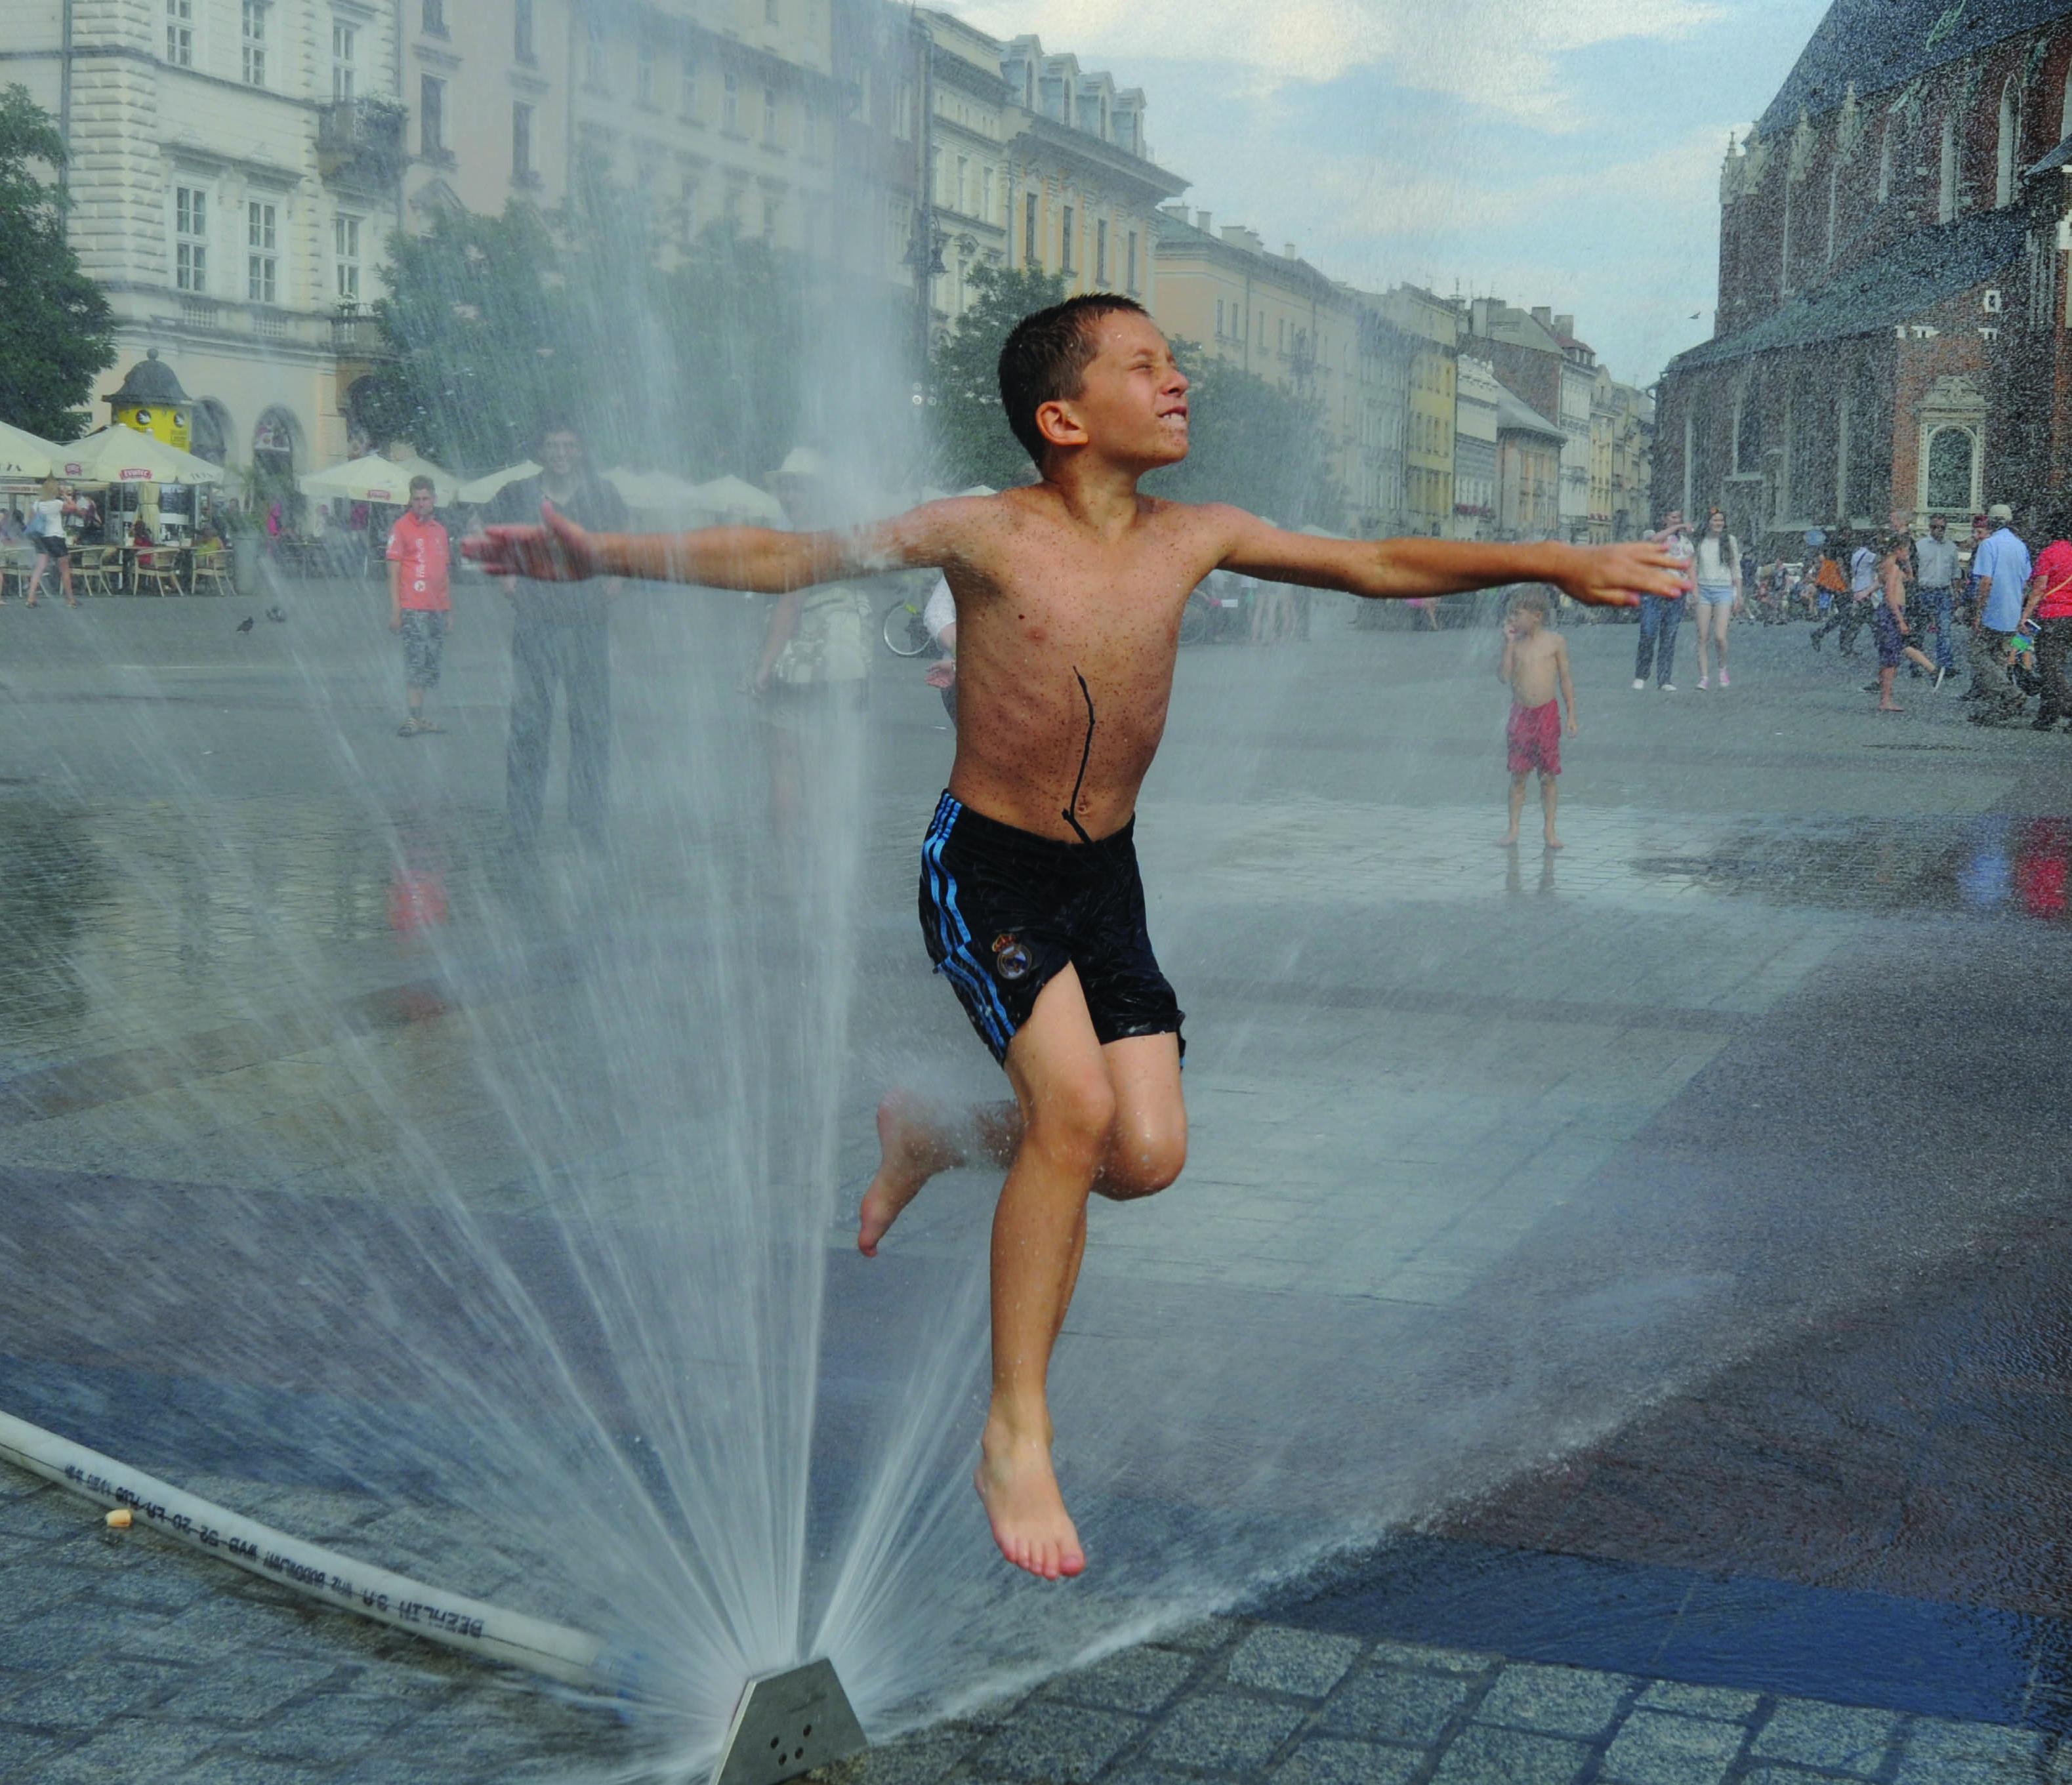 Fotografia na rua de criança em calções de banho a saltar por cima de repuxo}